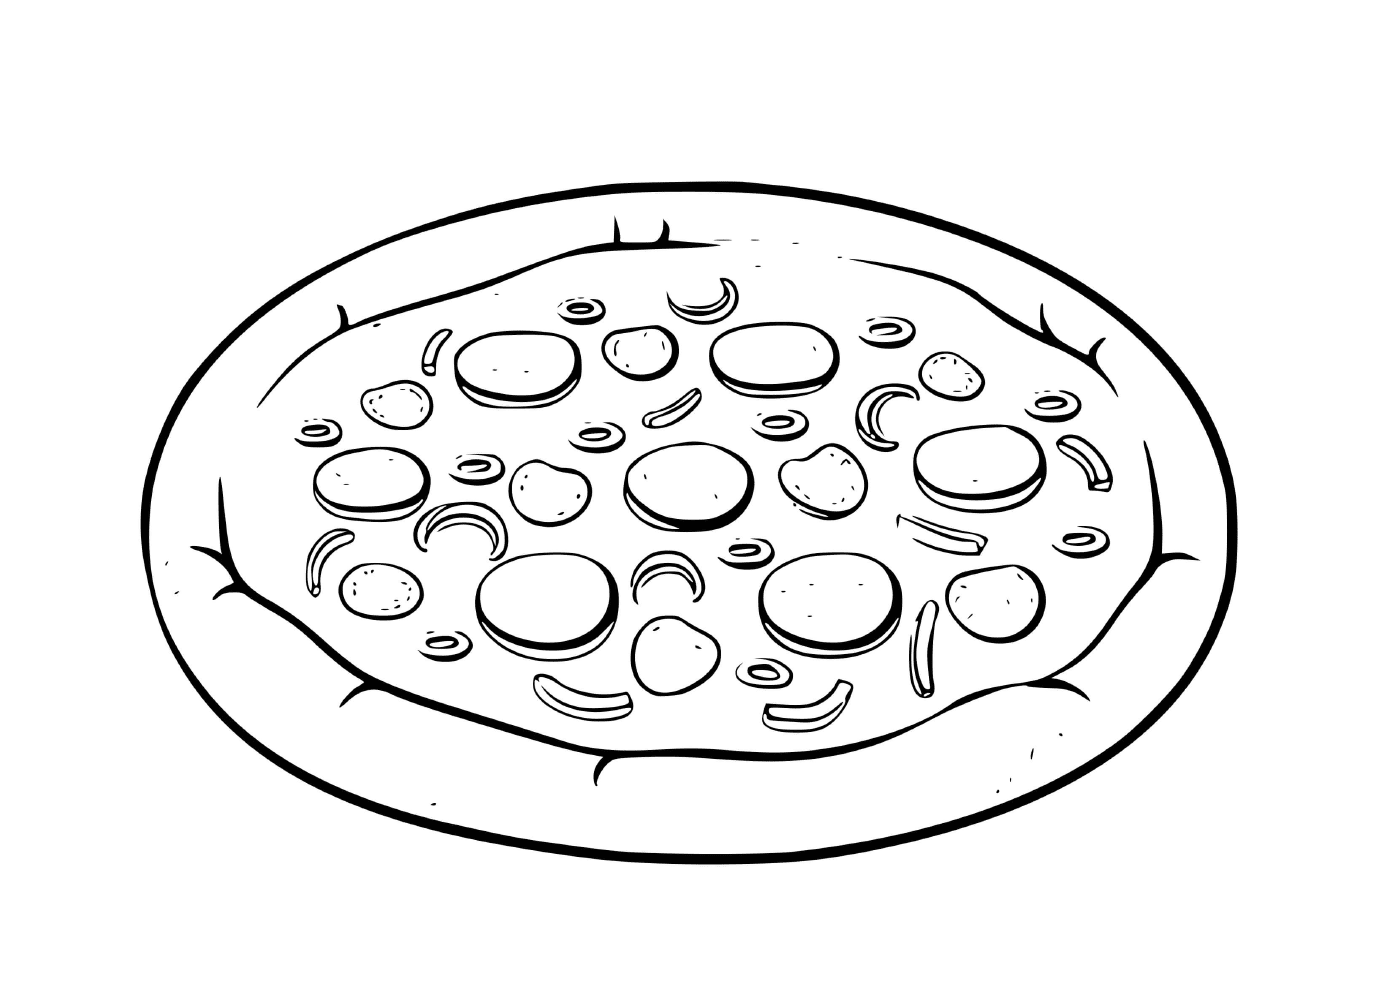 A Greek pizza